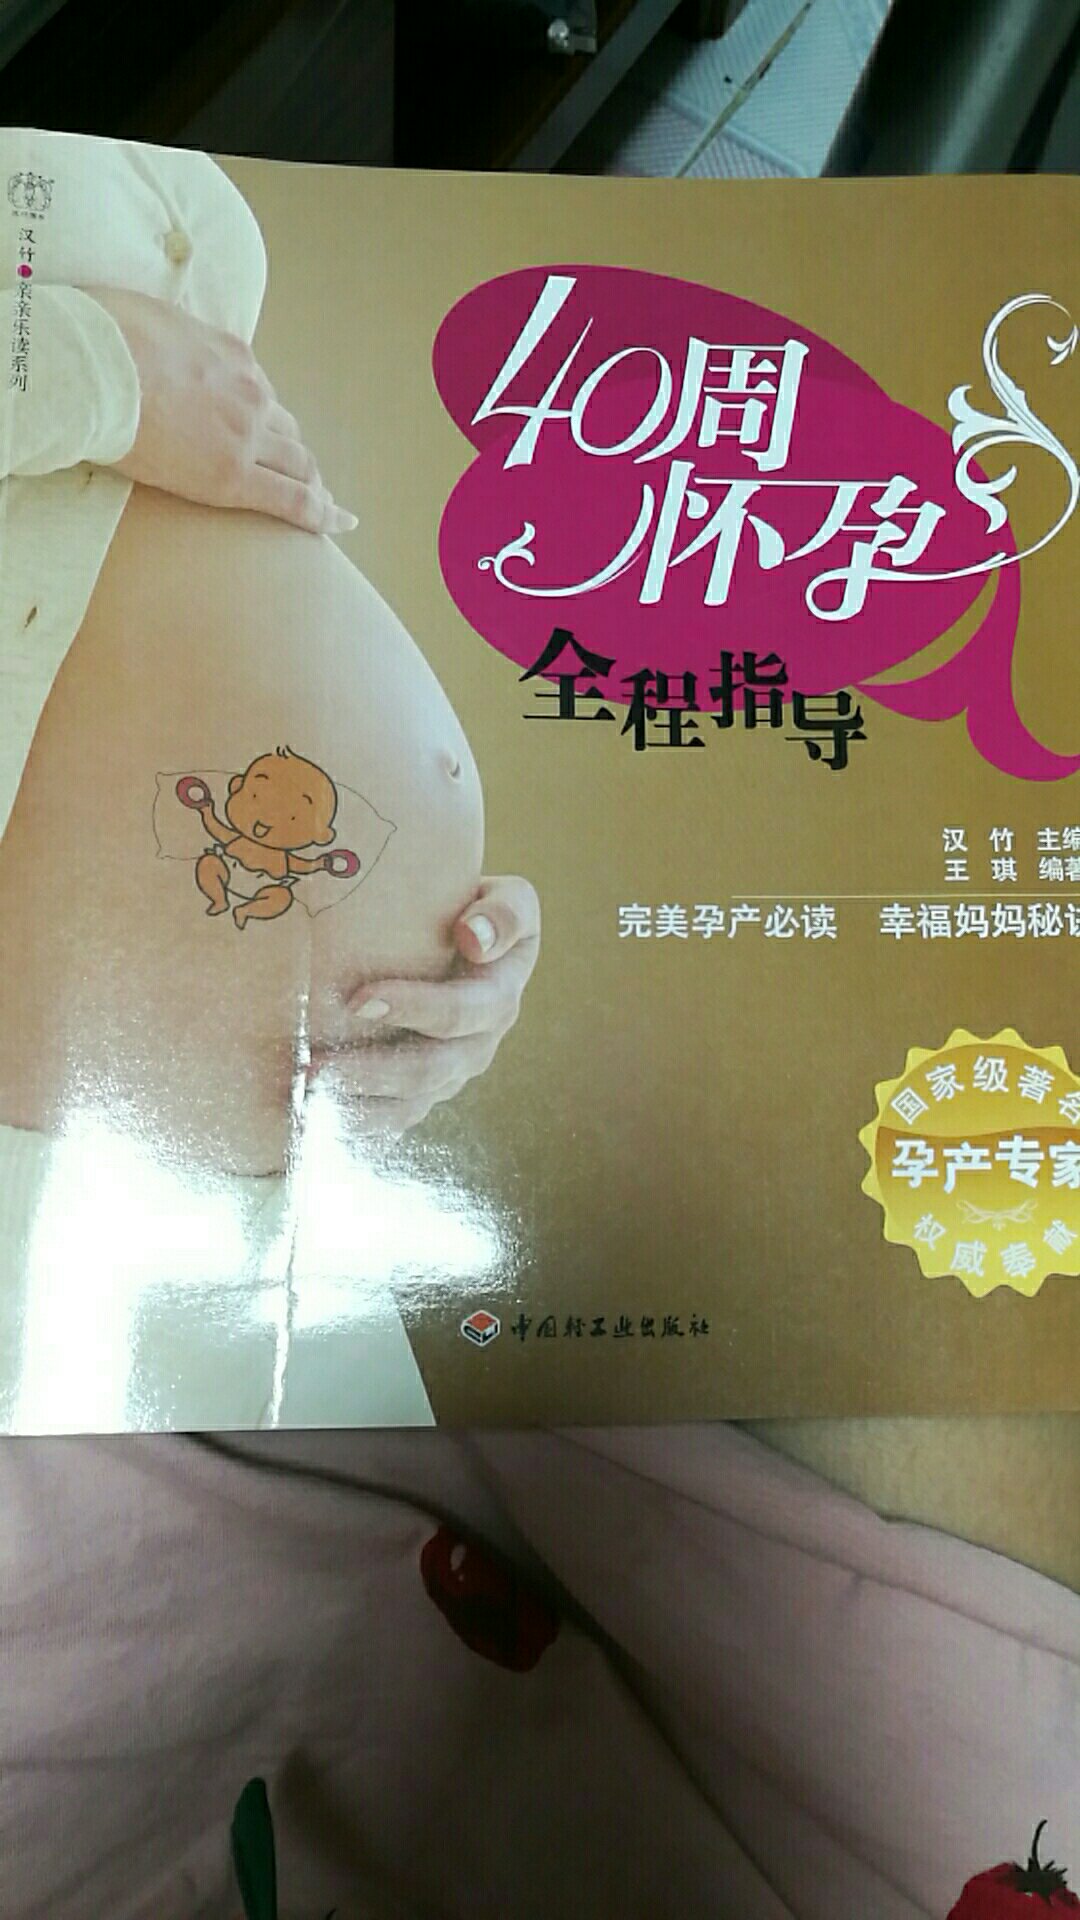 书的质量不错，内容对孕妇很有帮助。